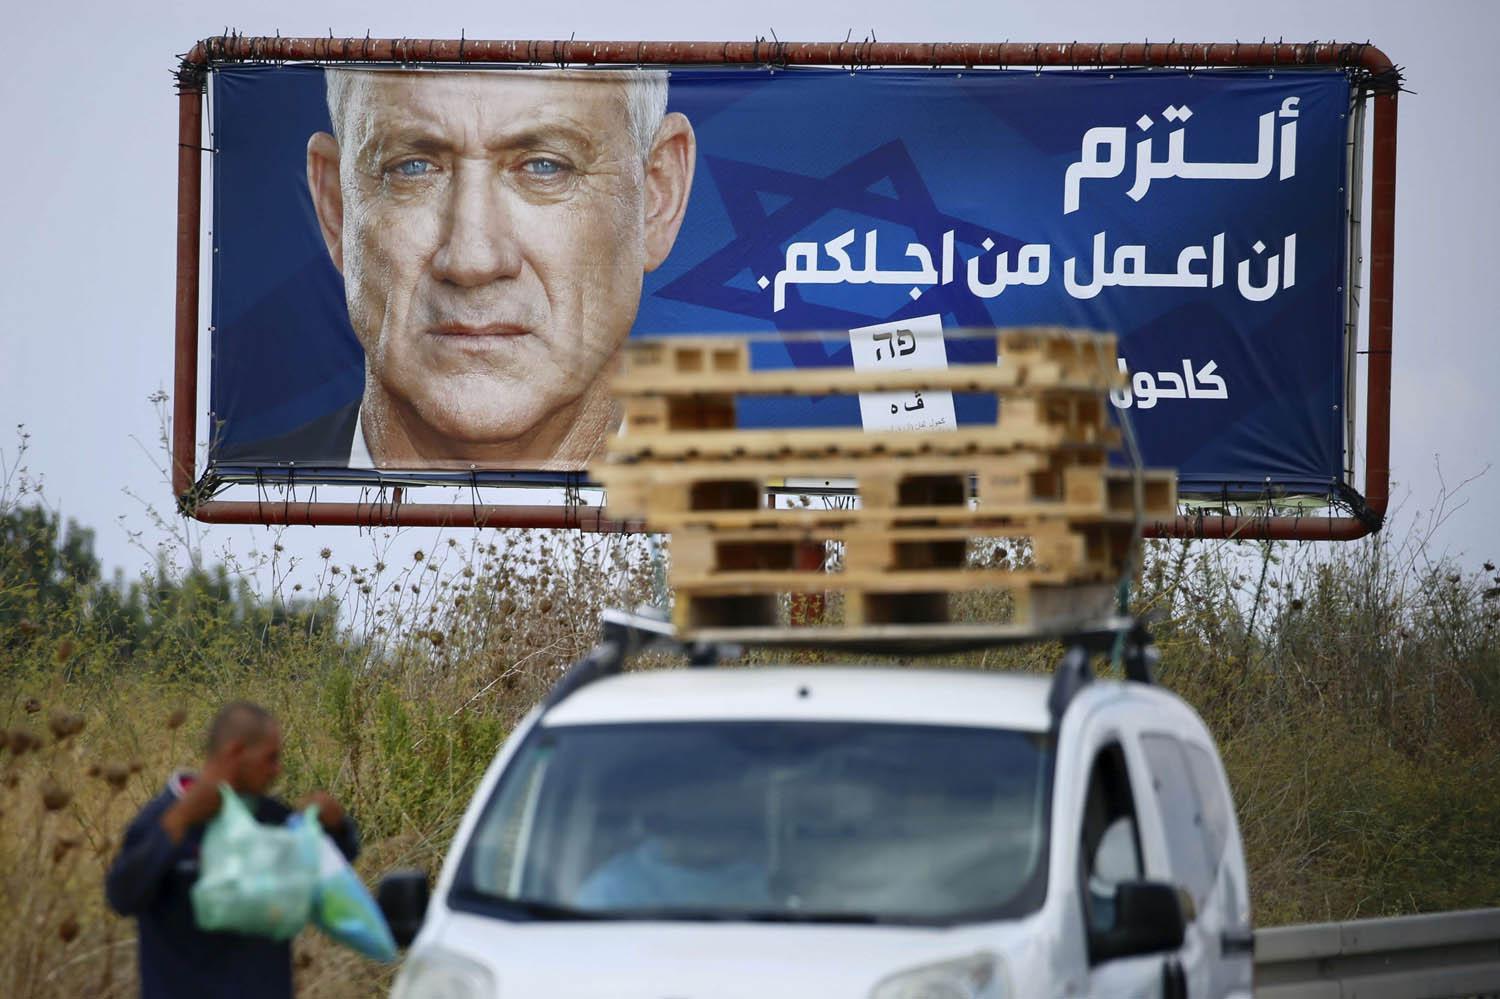 اعلان انتخابي اسرائيلي في منطقة عربية